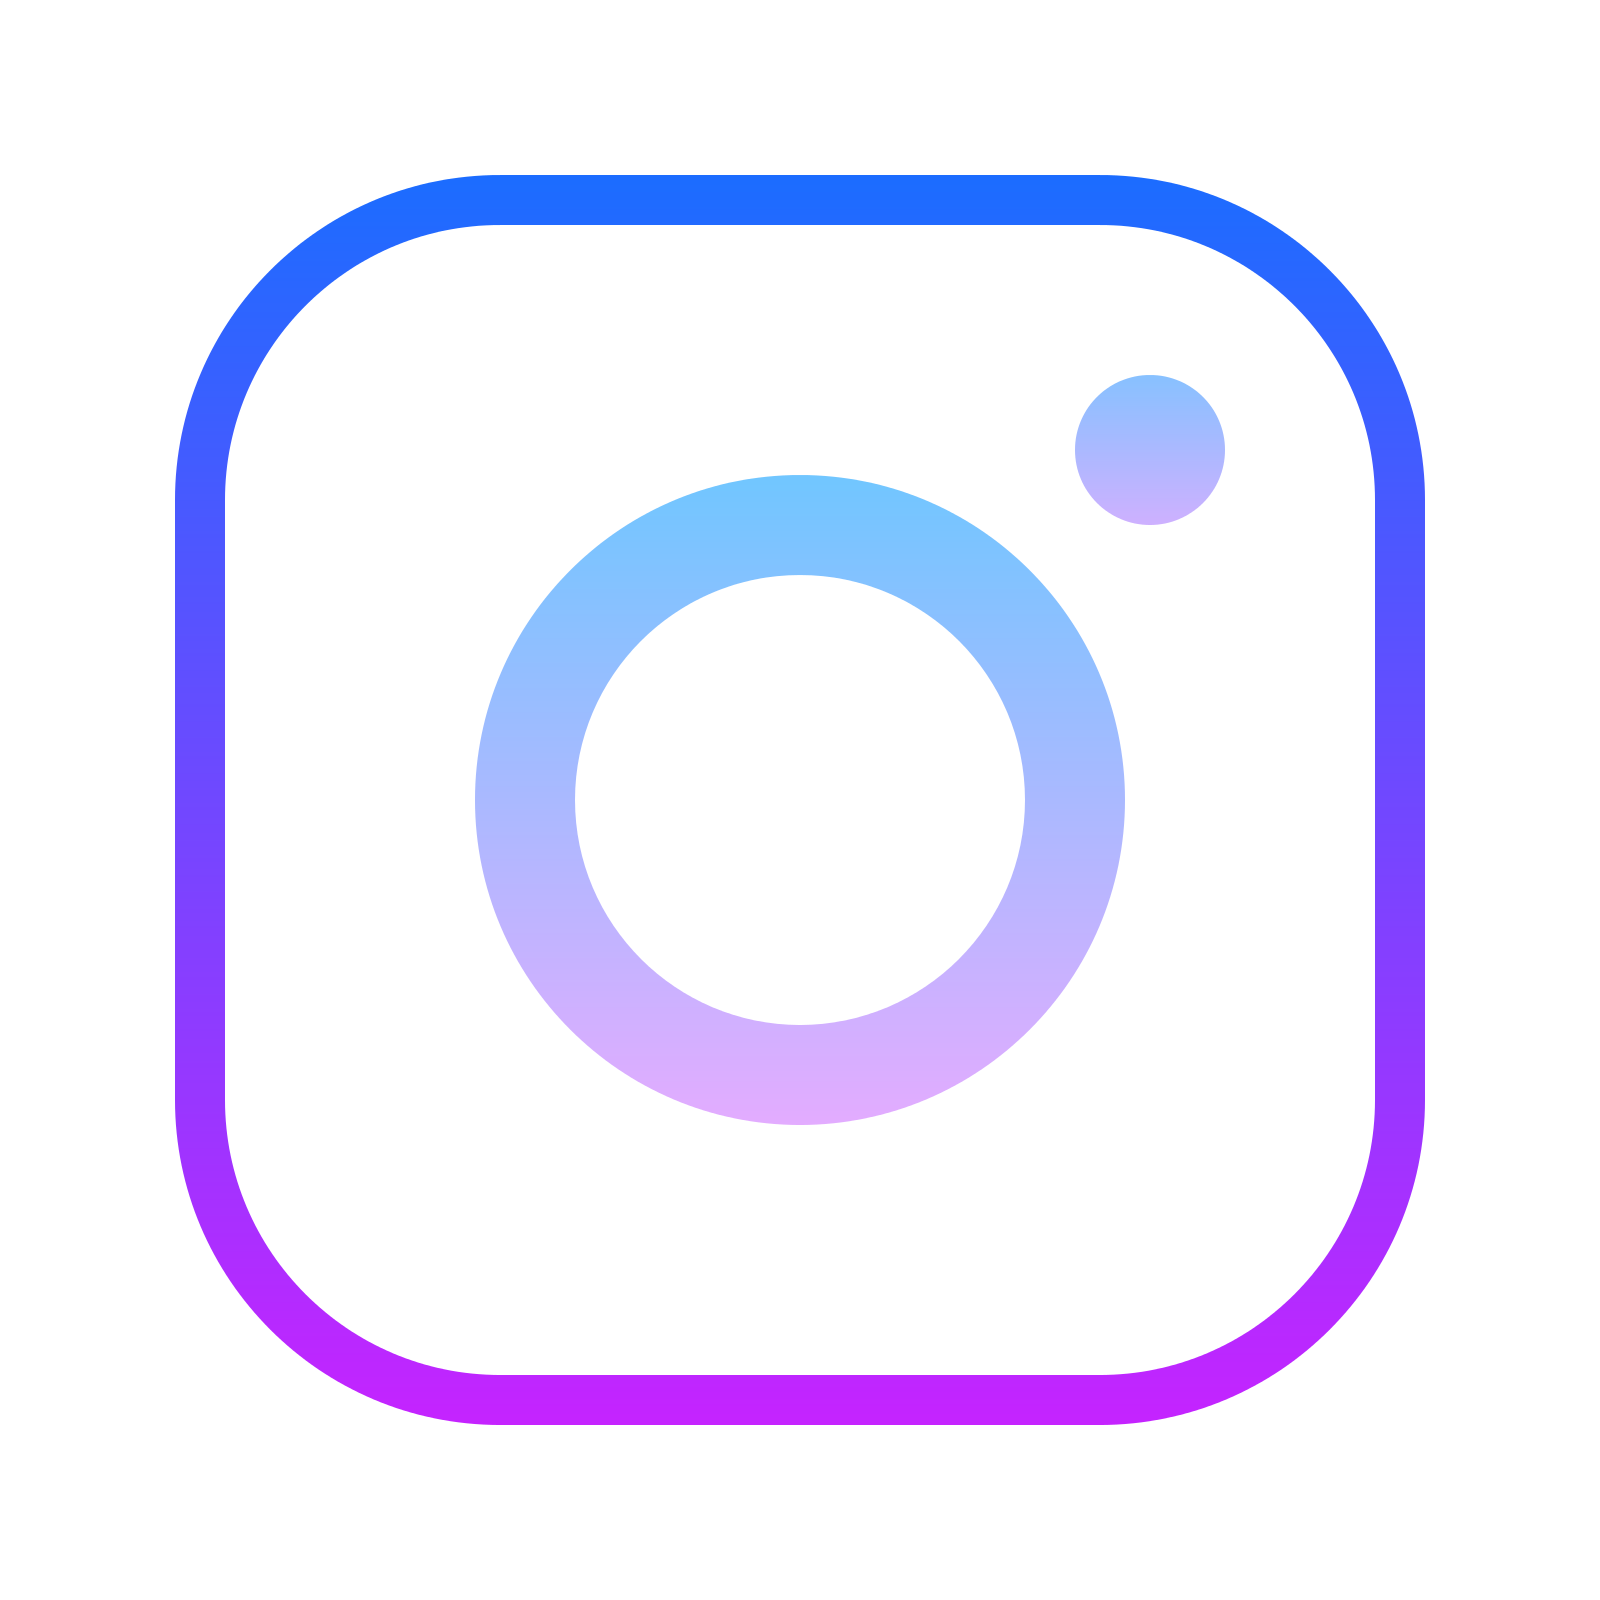 Instagram Instagram Logo Png Image Transparent Png 1603 Free Png Images